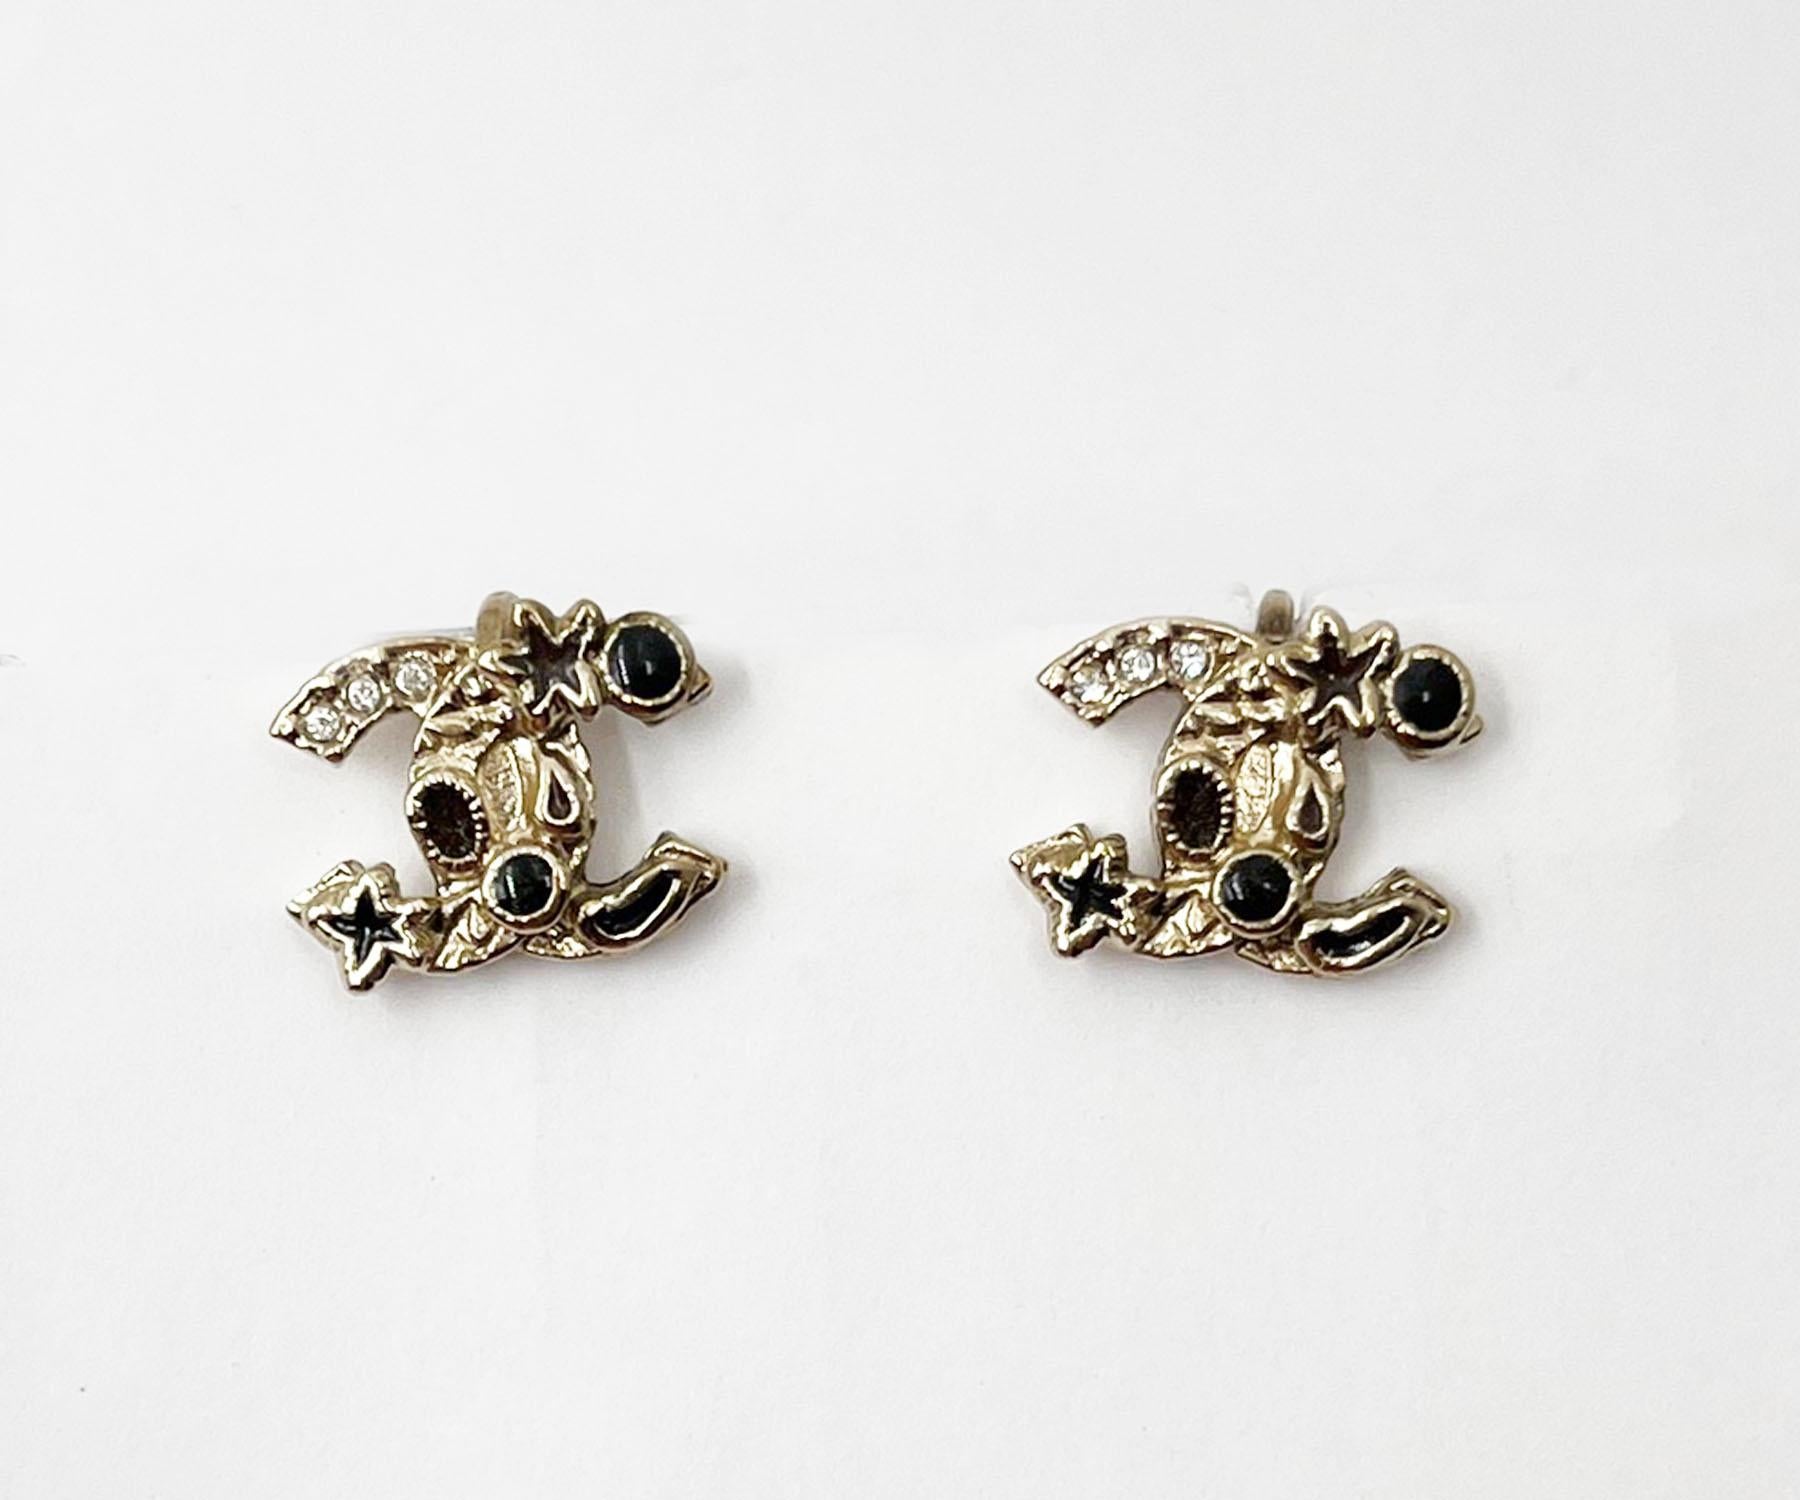 Boucles d'oreilles Chanel or CC noir étoile de mer à clip

*Marked 11
*Fabriqué en France

-Il mesure environ 0,5